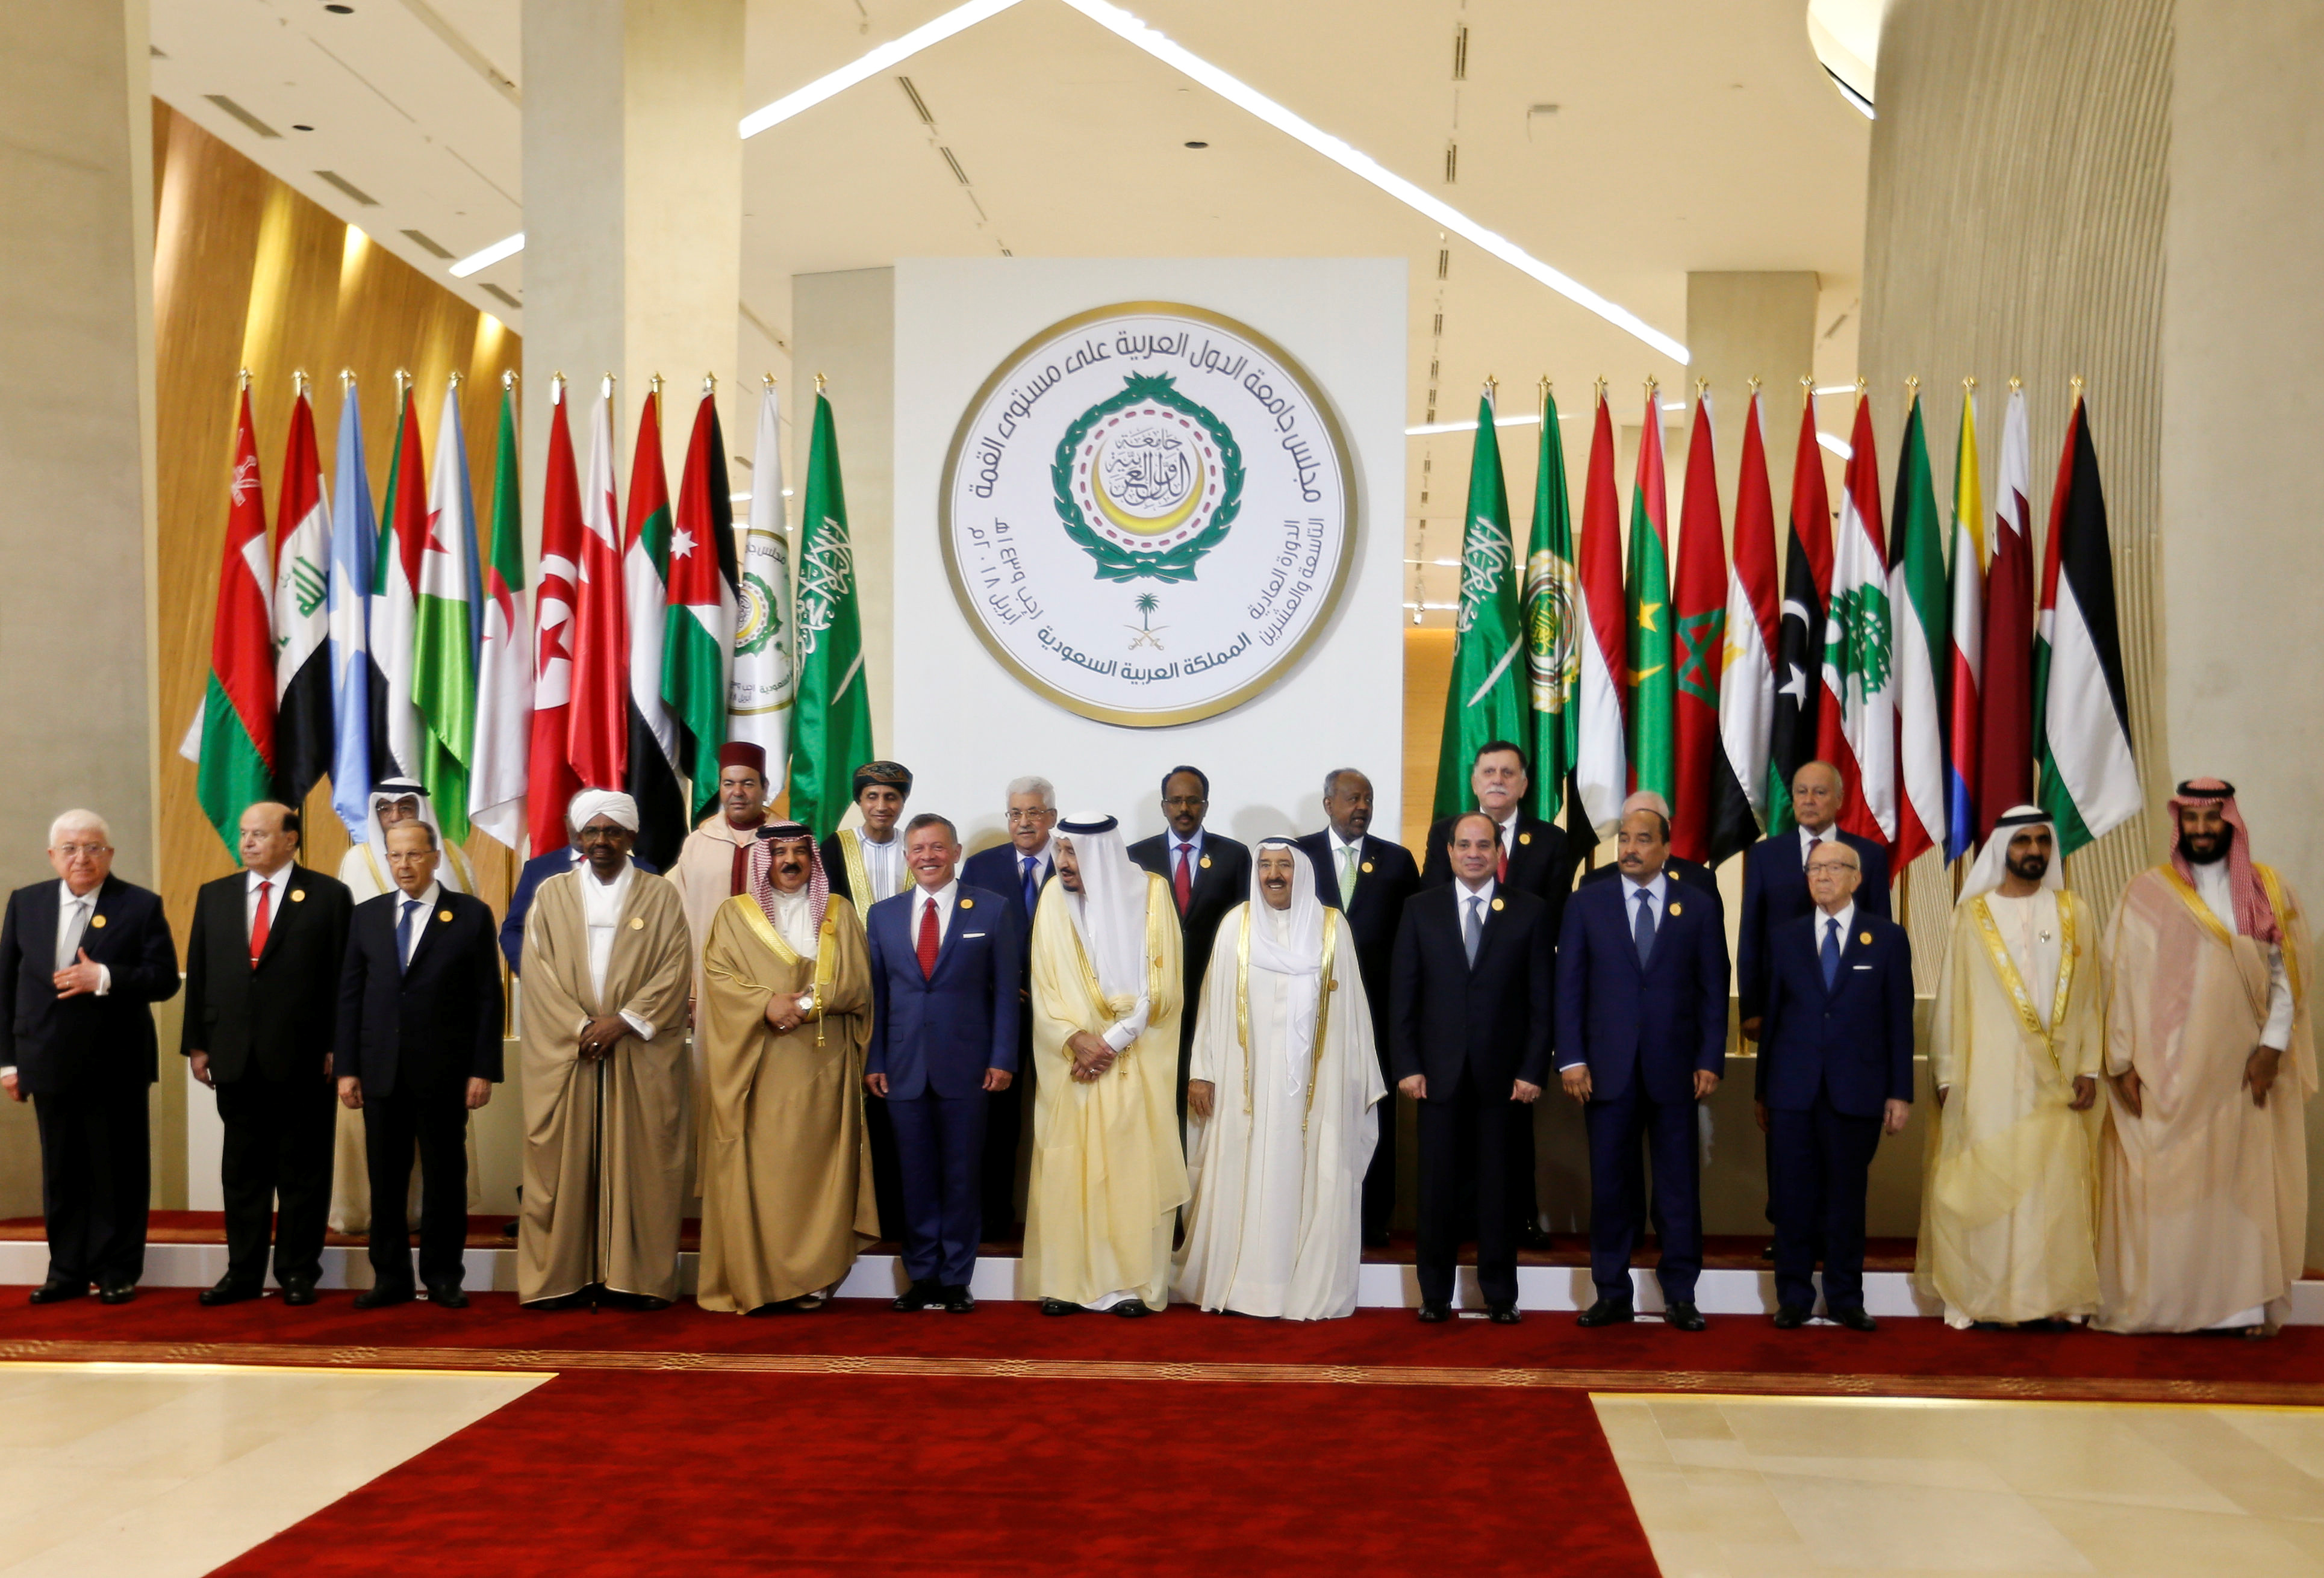 صورة تذكارية للزعماء العرب فى القمة العربية بالسعودية